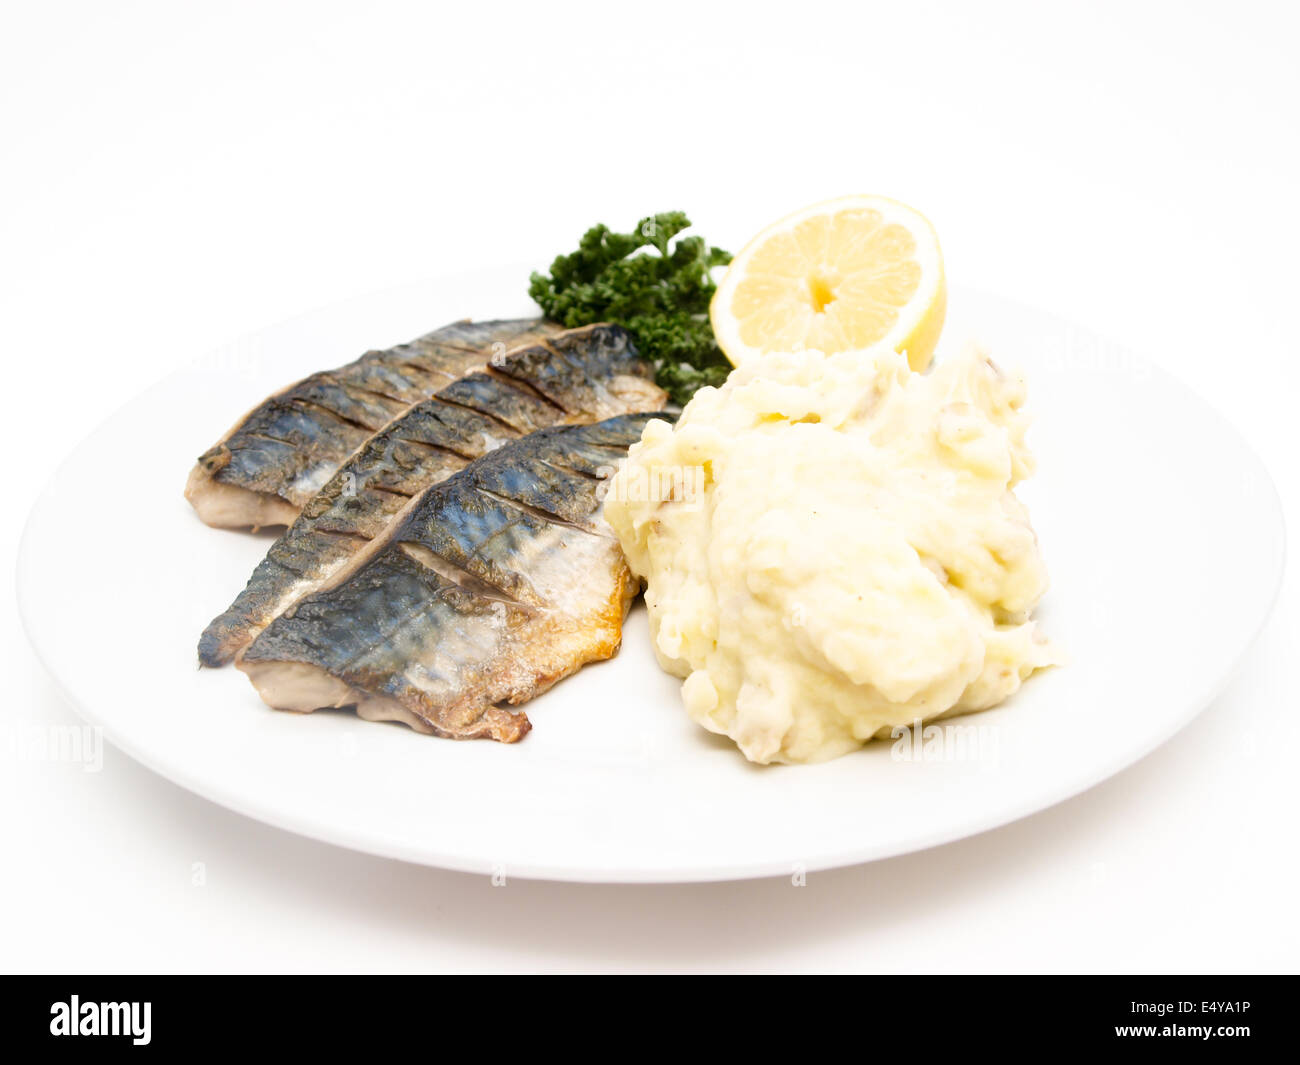 Fried mackerel with mashed potatoes Stock Photo